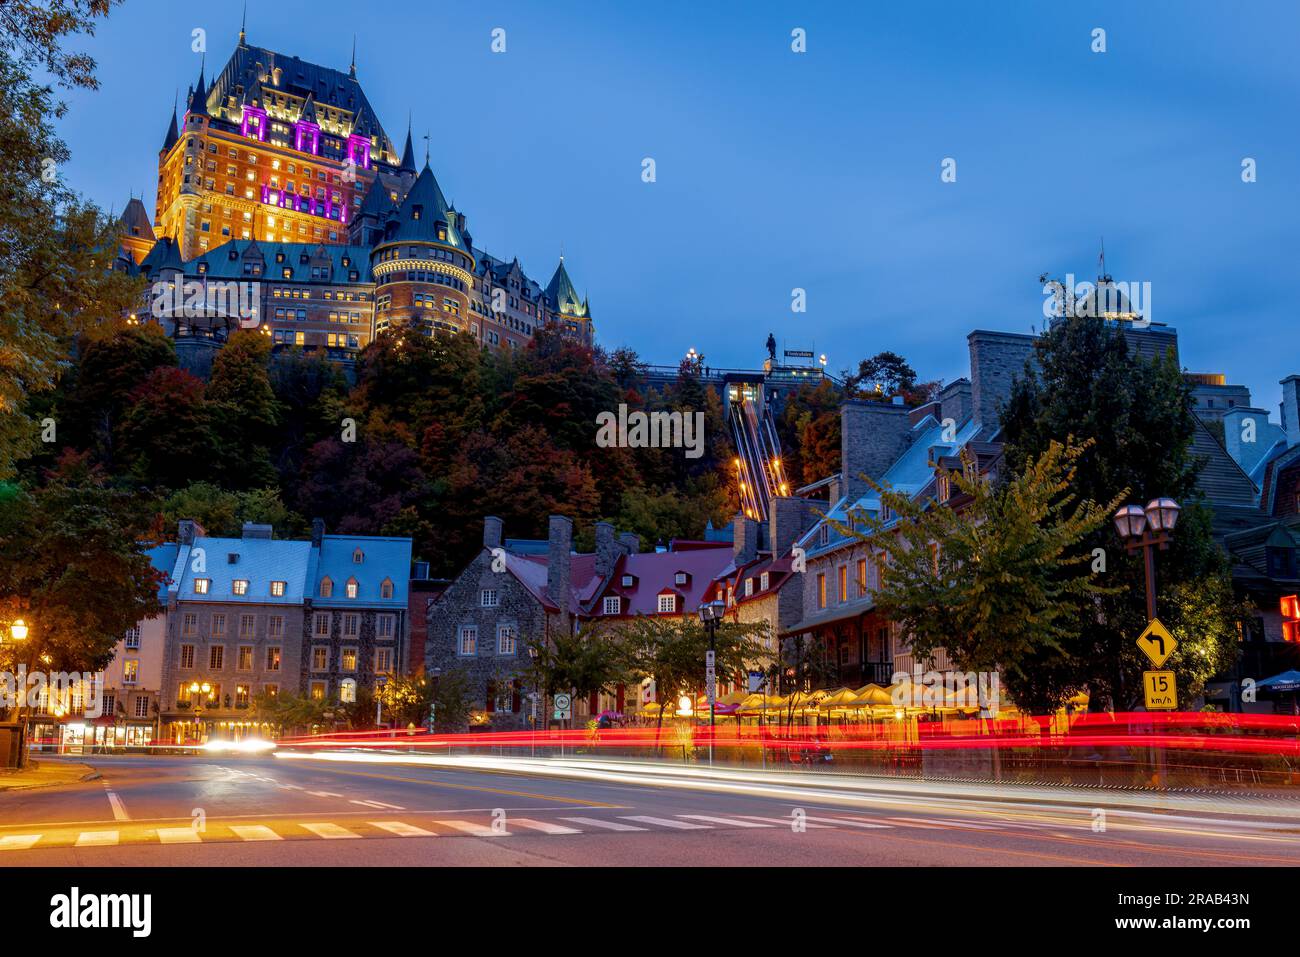 Il punto centrale che attrae tutti i turisti nella città vecchia di Quebec è il castello di Frontenac e la sua terrazza. Foto Stock